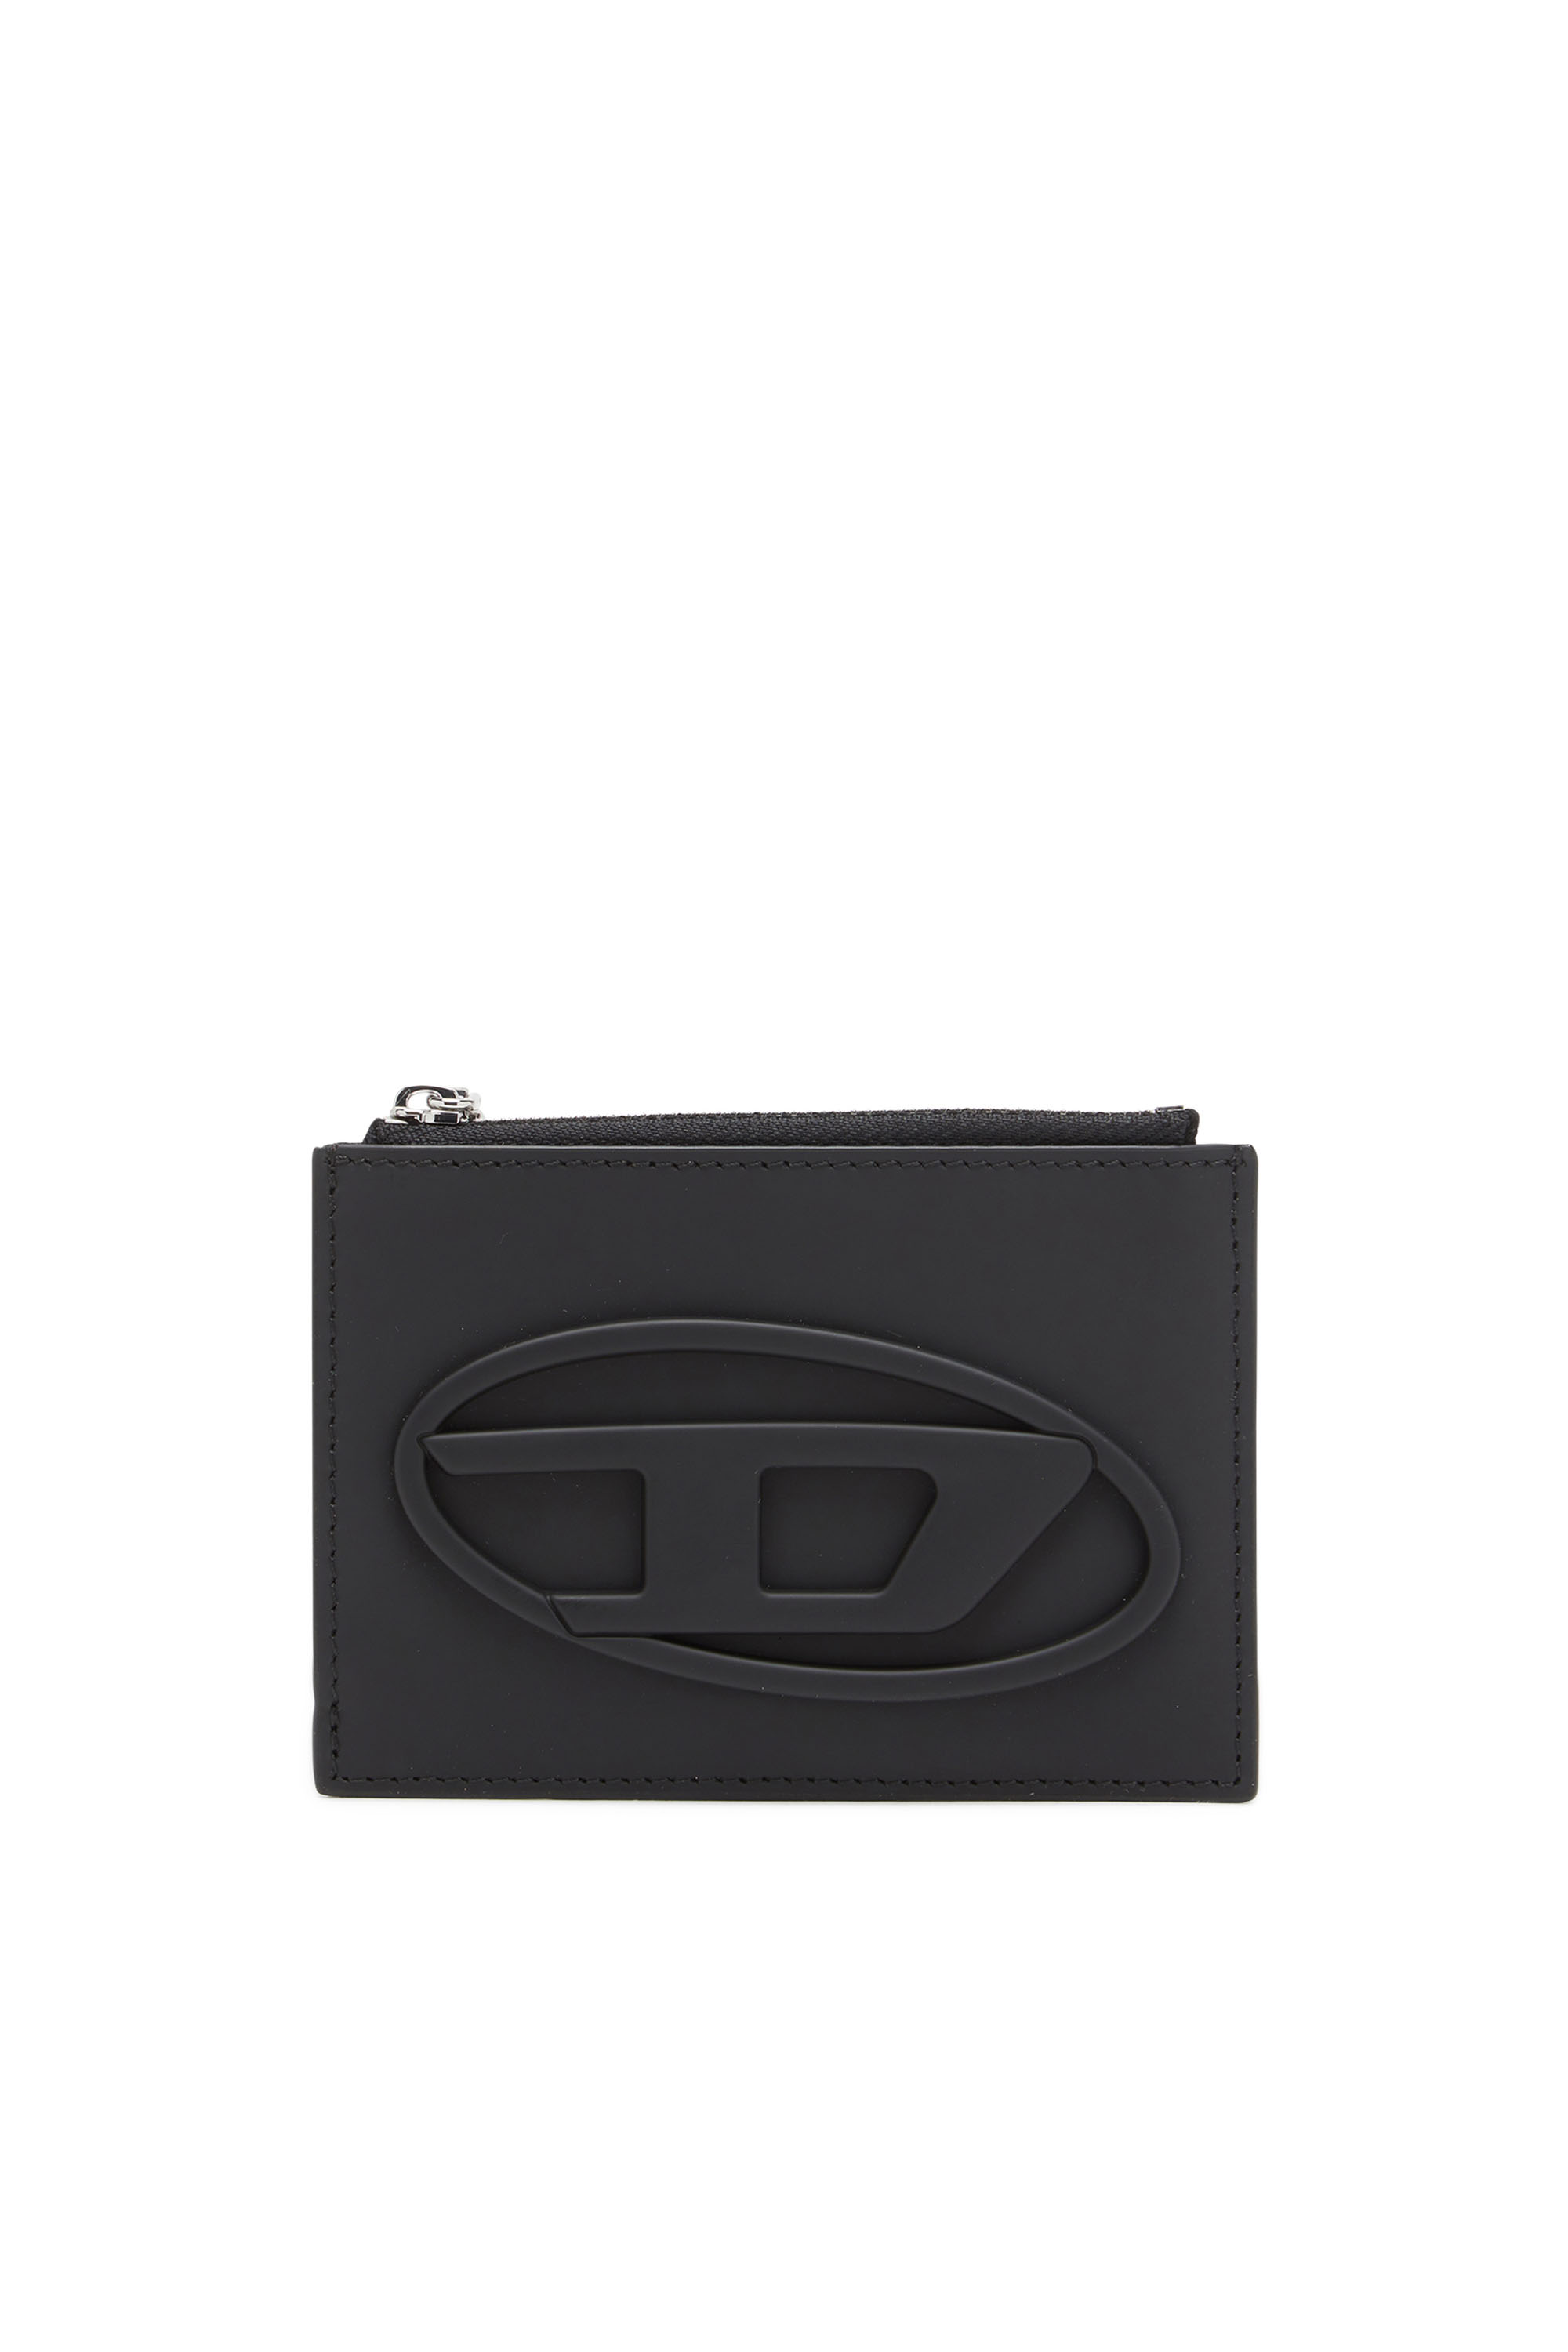 Diesel - 1DR CARD HOLDER I, ブラック - Image 1